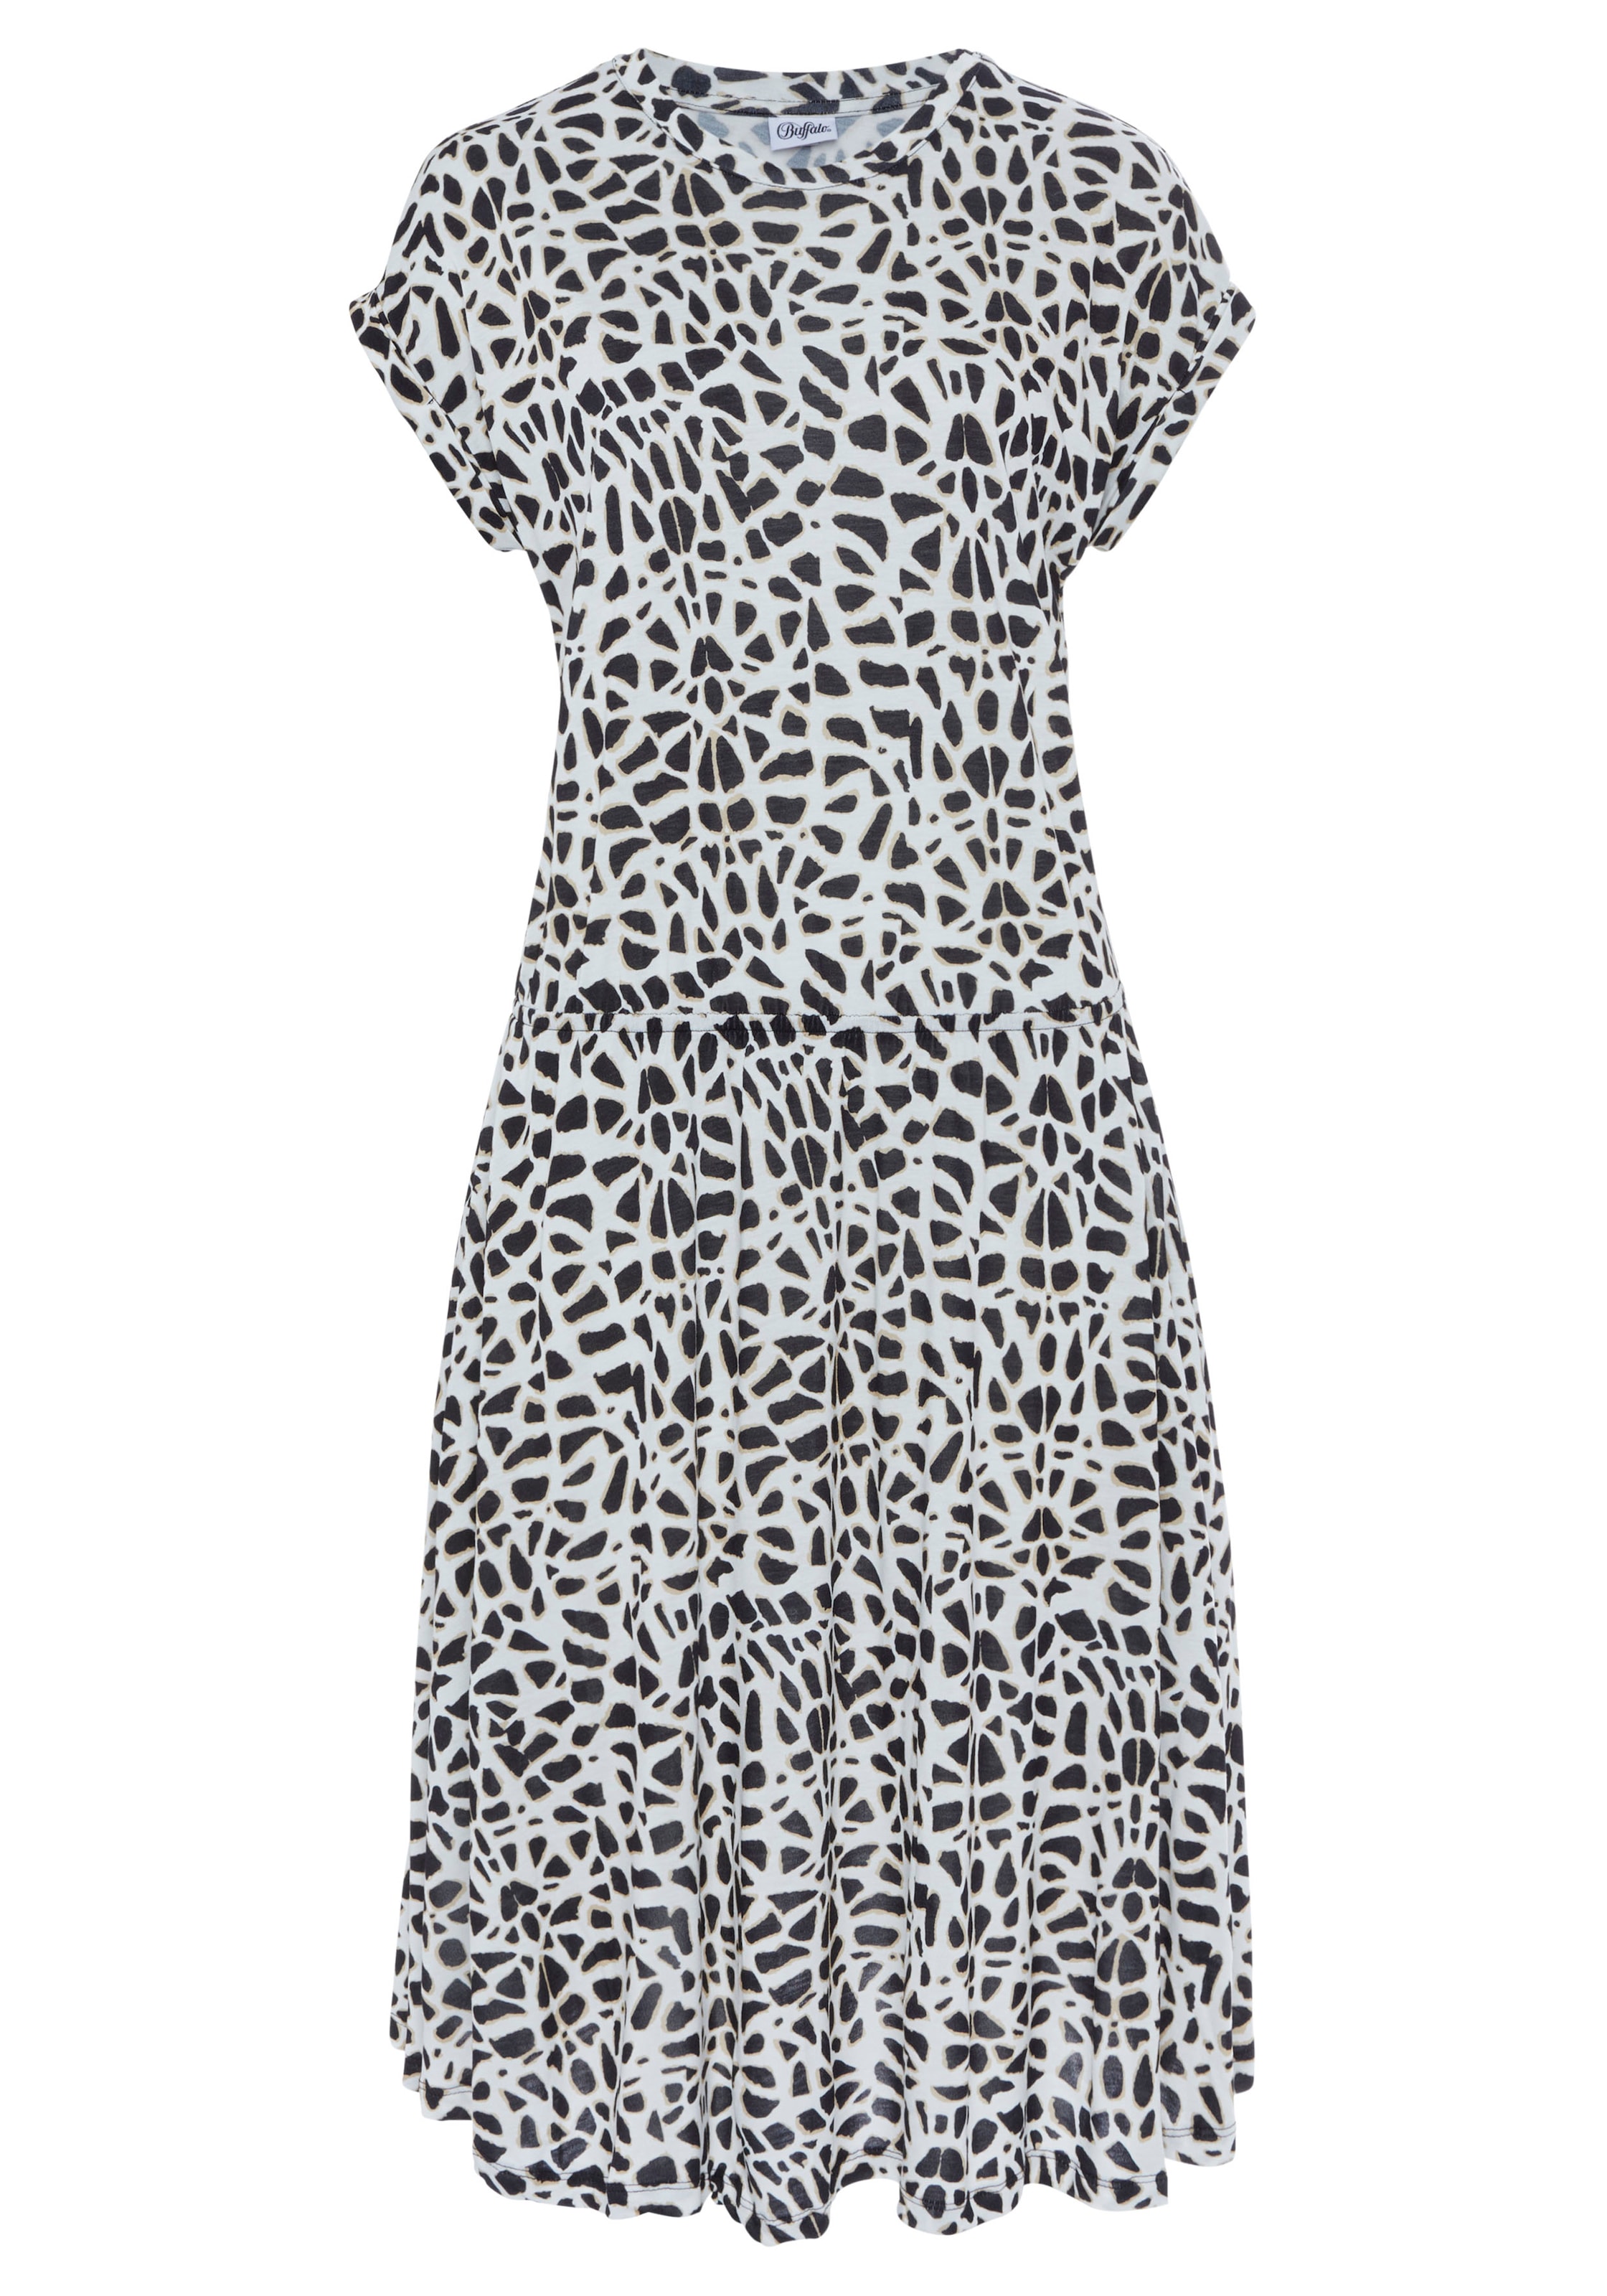 LASCANA Jerseykleid, mit Animalprint kaufen im OTTO Online Shop